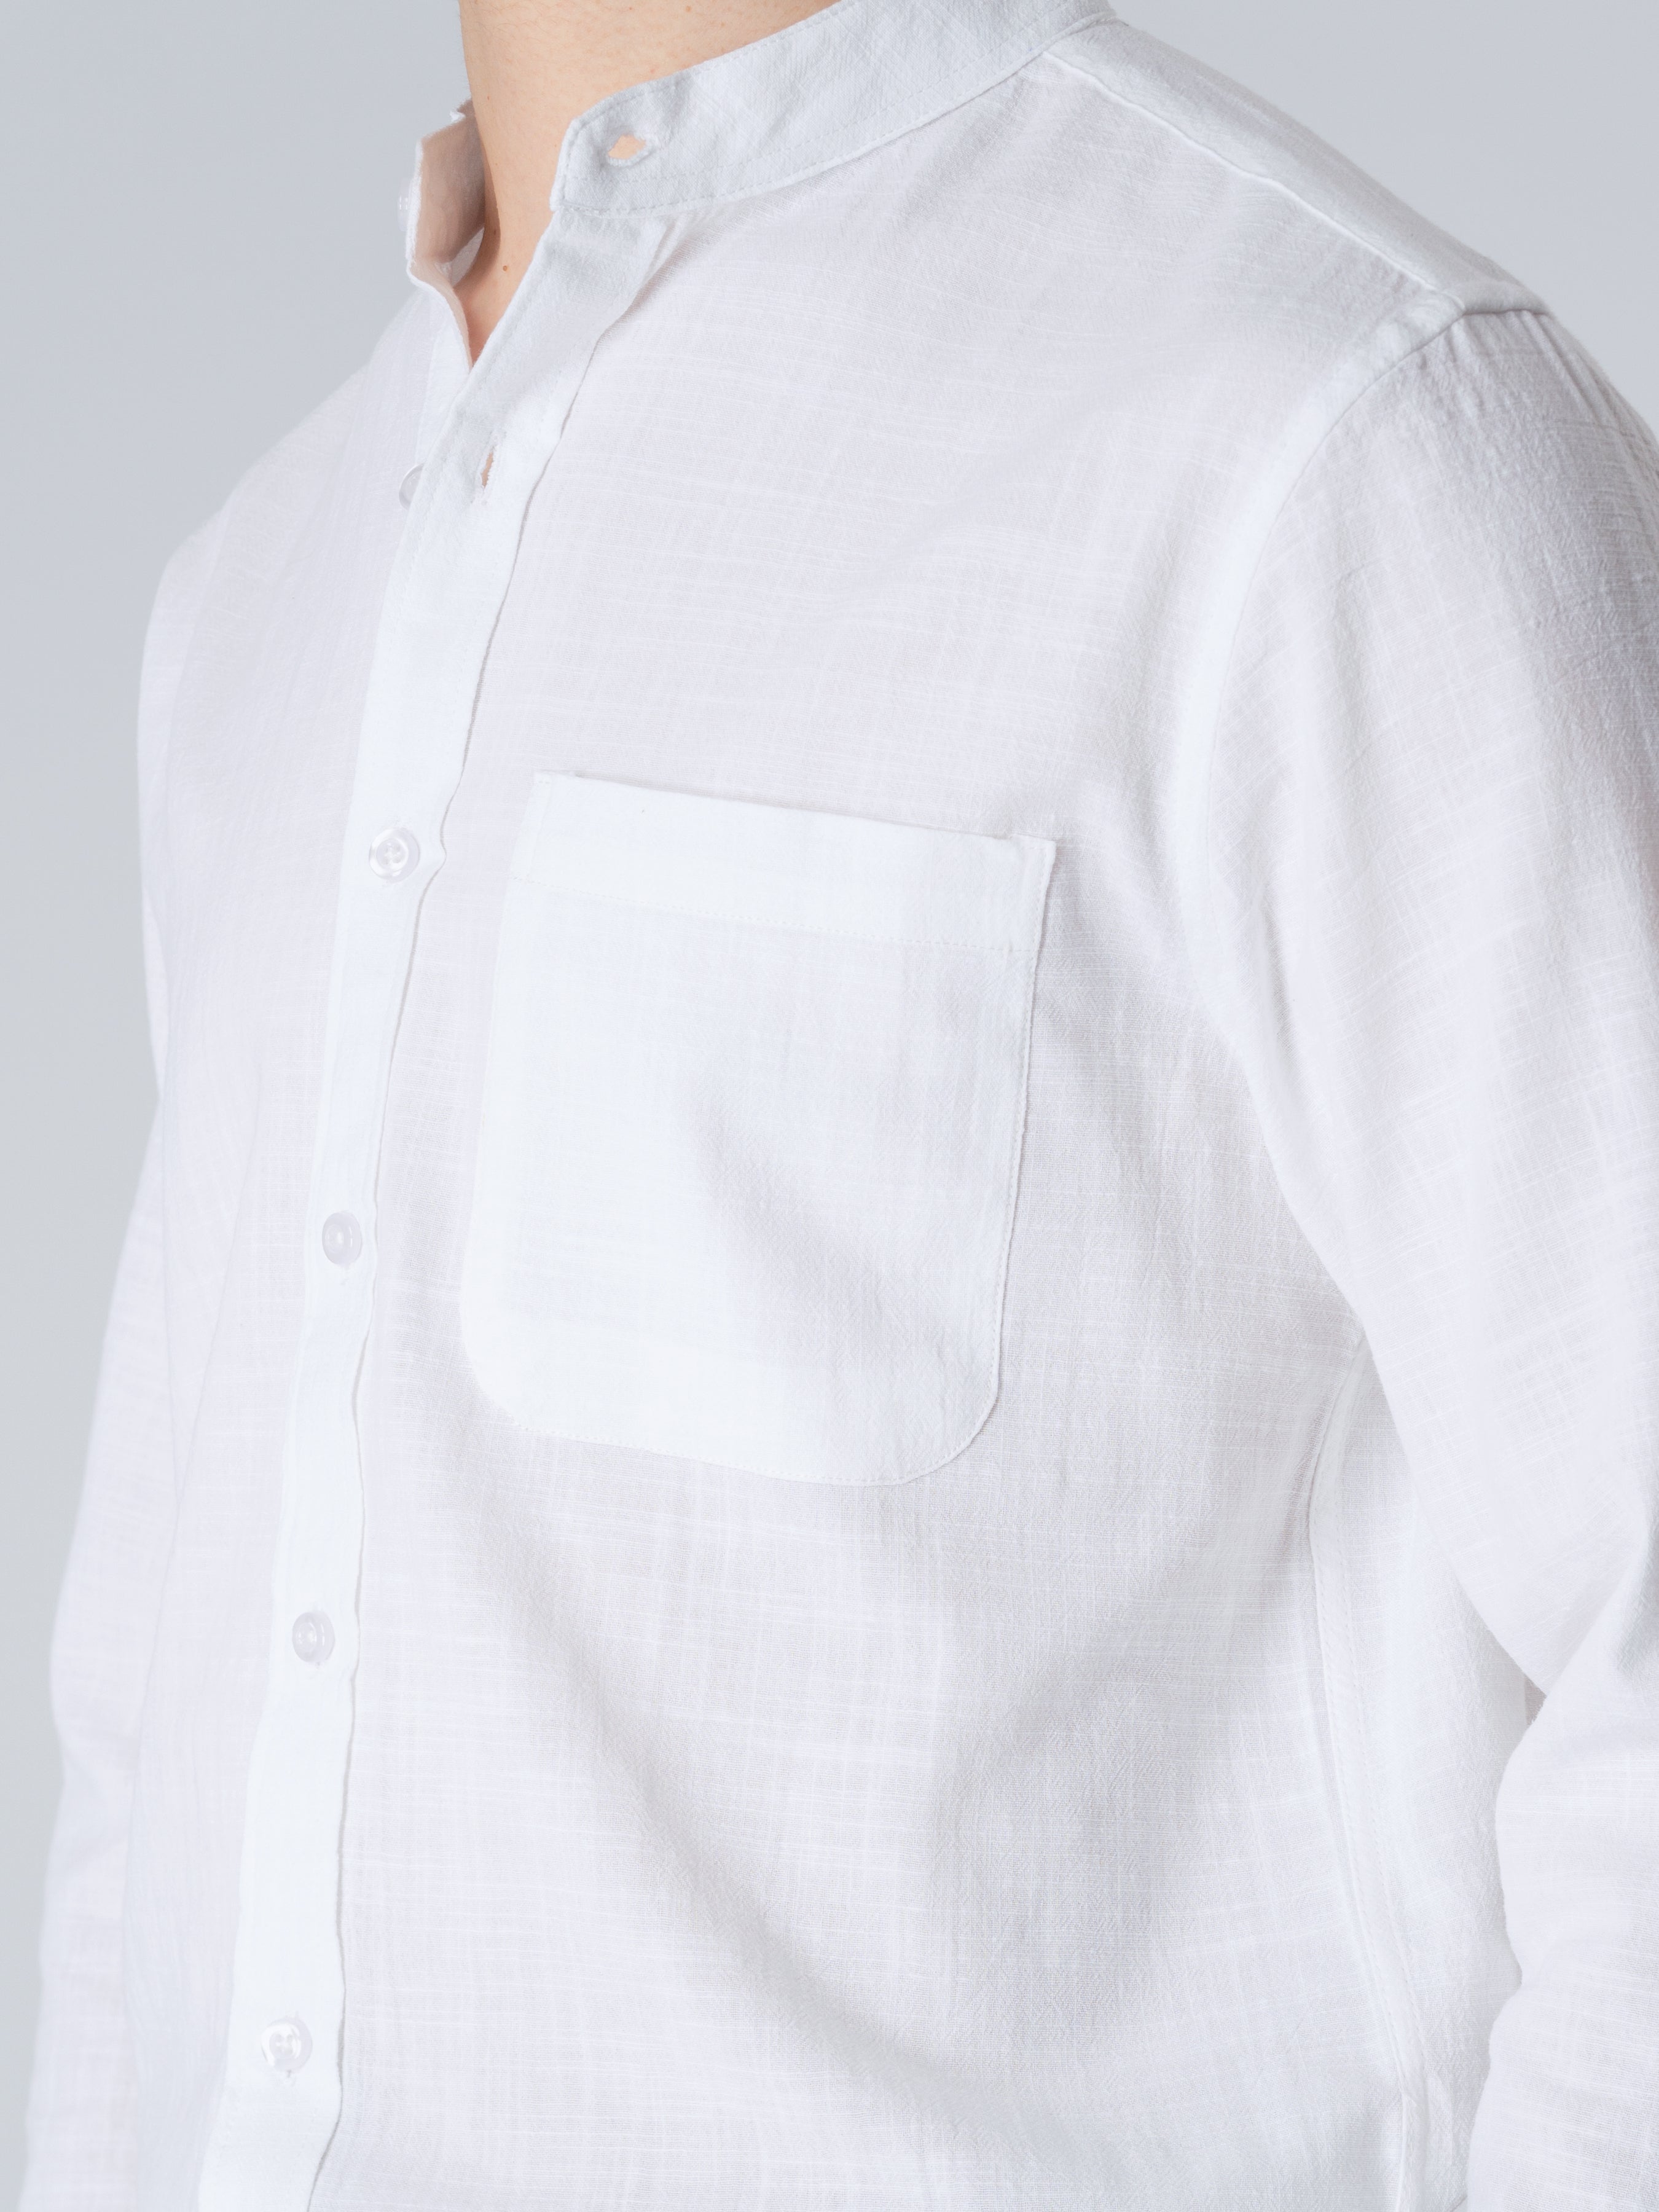 Stand Collar Shirt - White